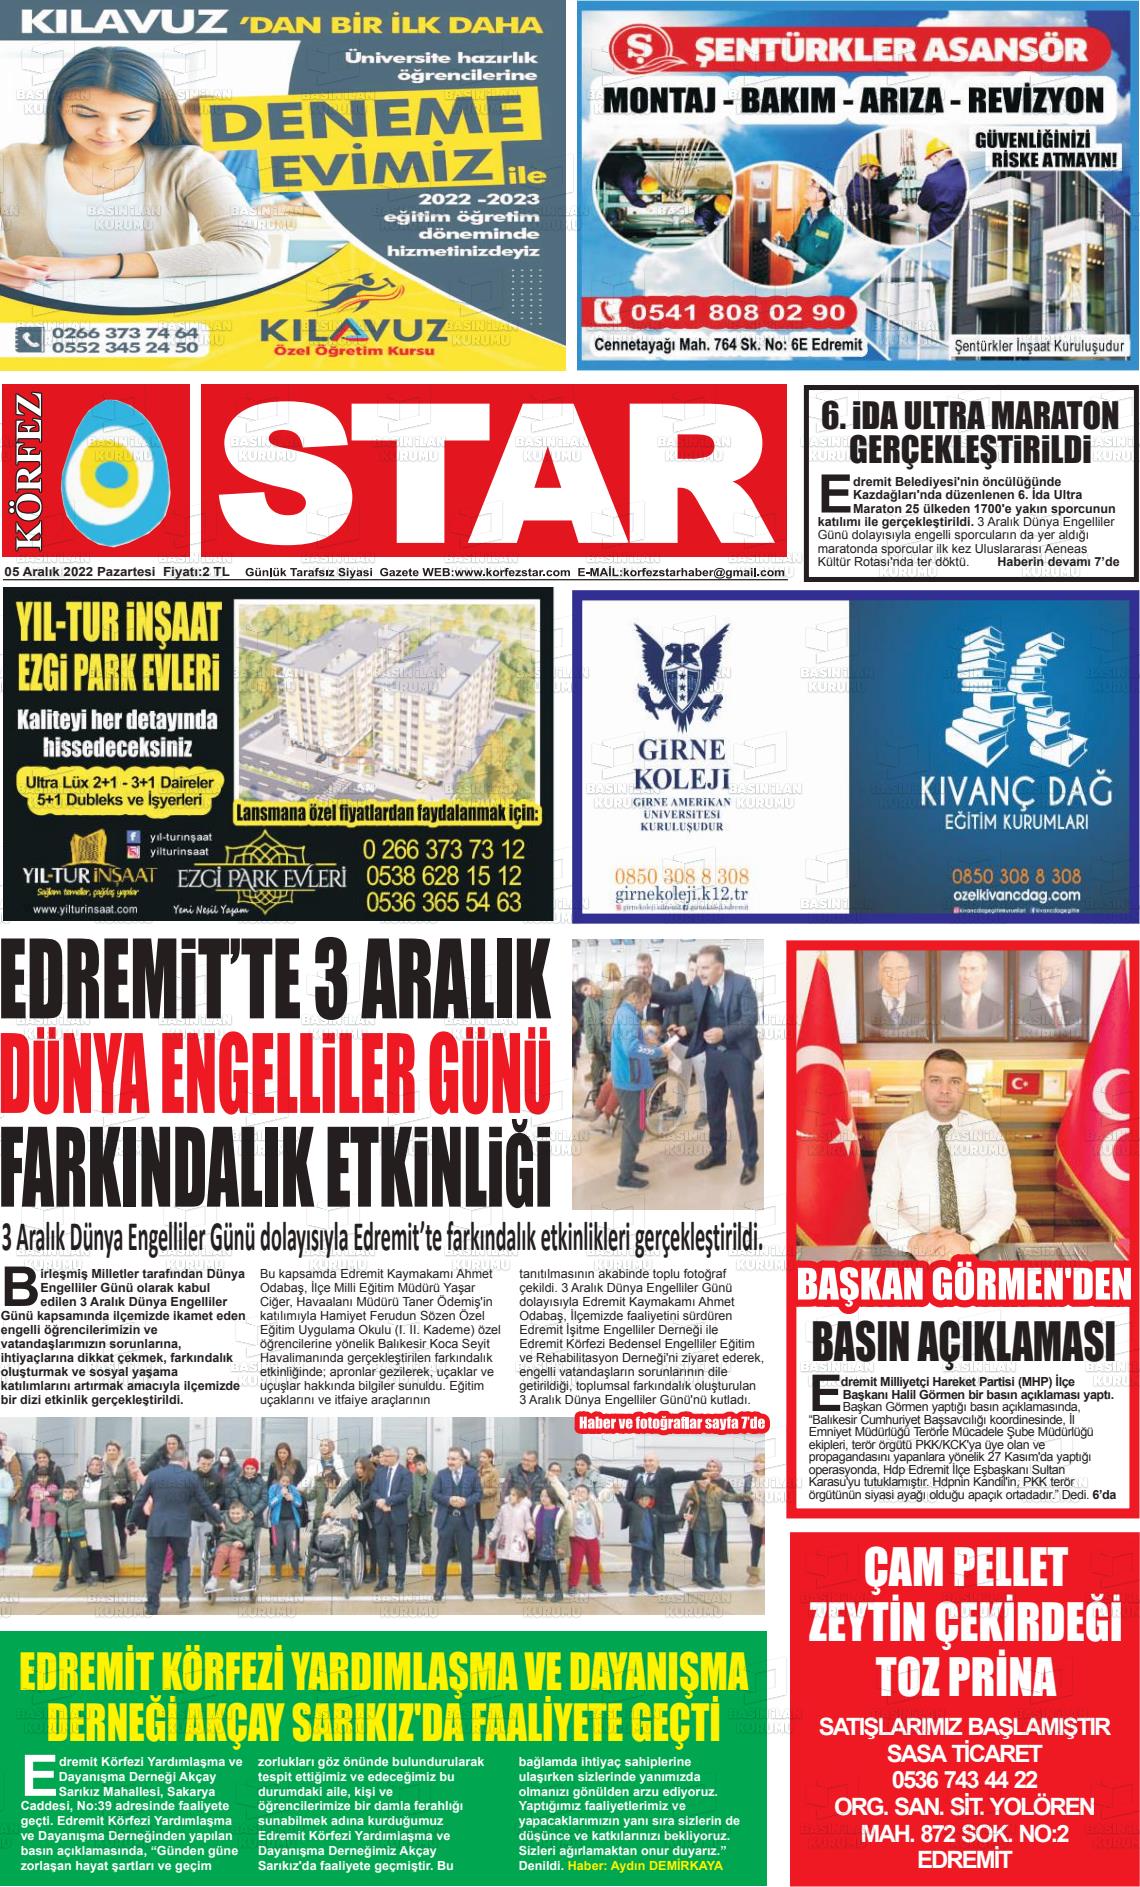 05 Aralık 2022 Körfez Star Gazete Manşeti